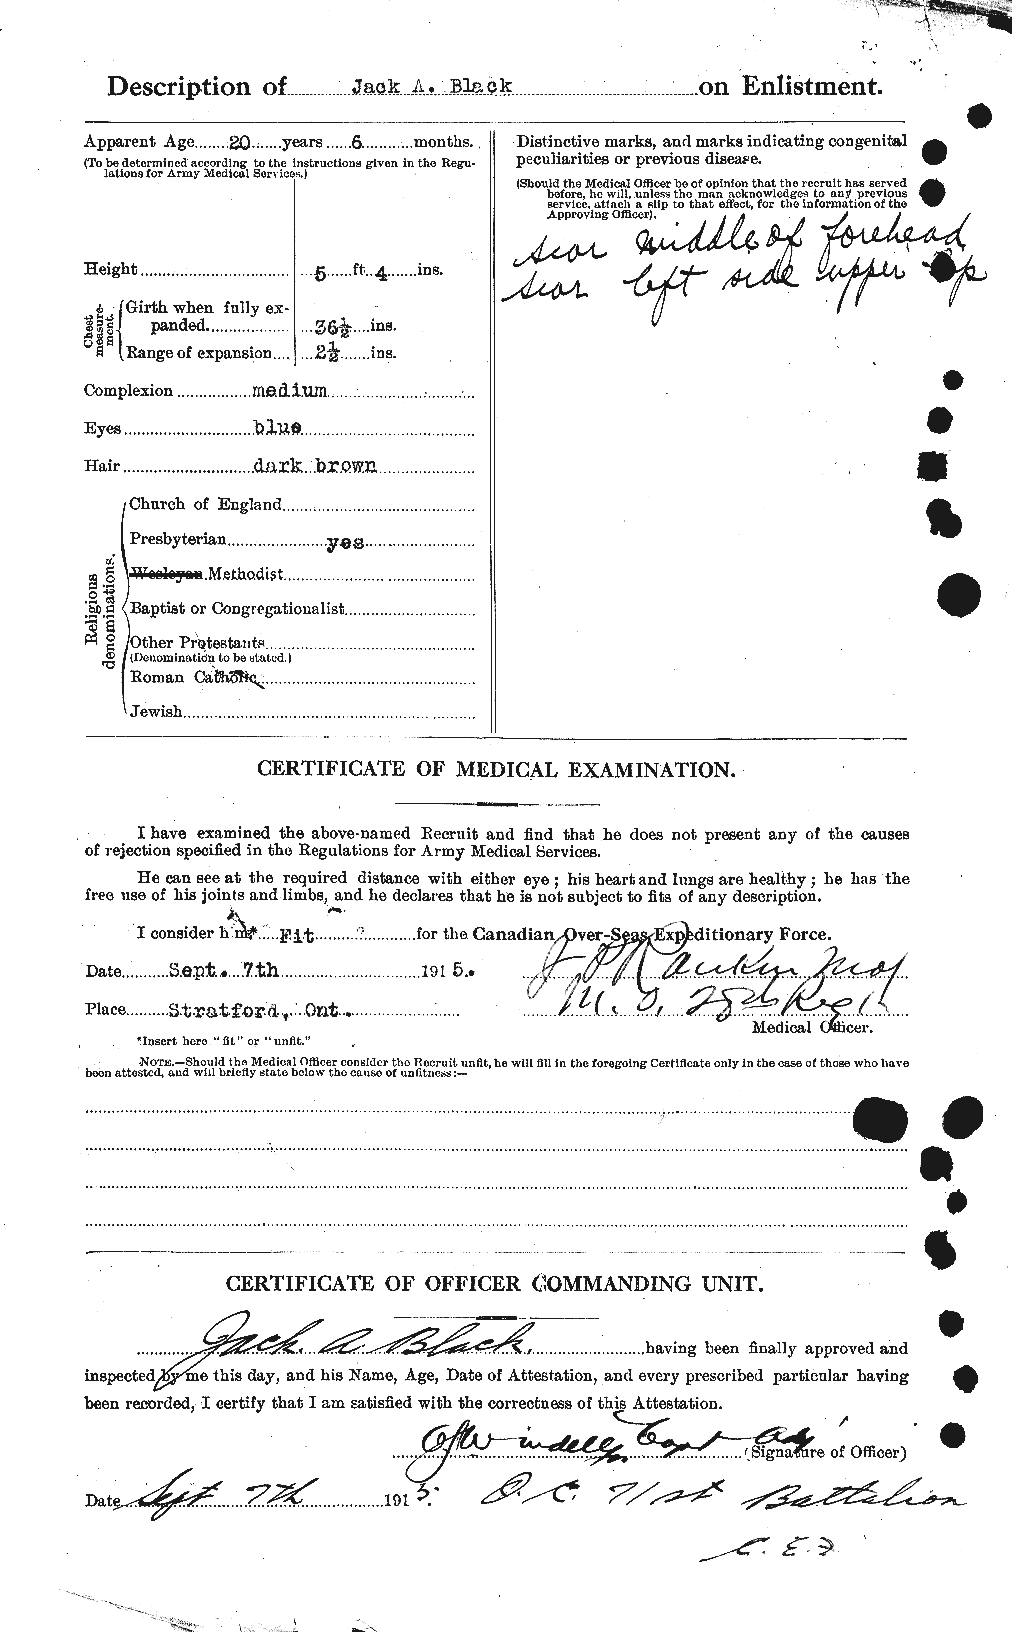 Dossiers du Personnel de la Première Guerre mondiale - CEC 246818b